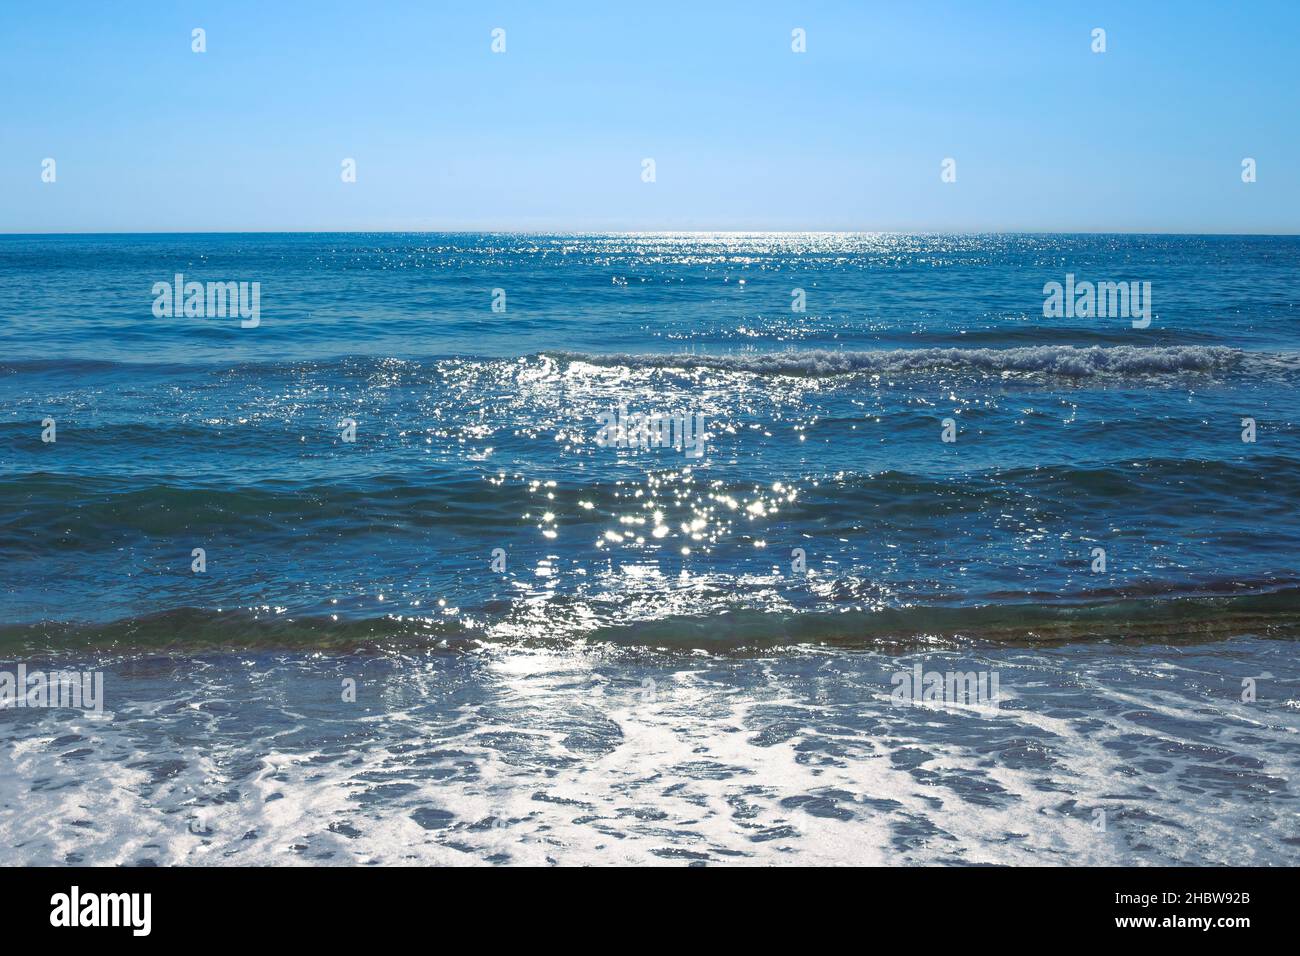 Ein wunderschönes blaues Meer mit einer Welle funkelt in der Sonne. Natürlicher Hintergrund der Natur, Meereslandschaft. Stockfoto